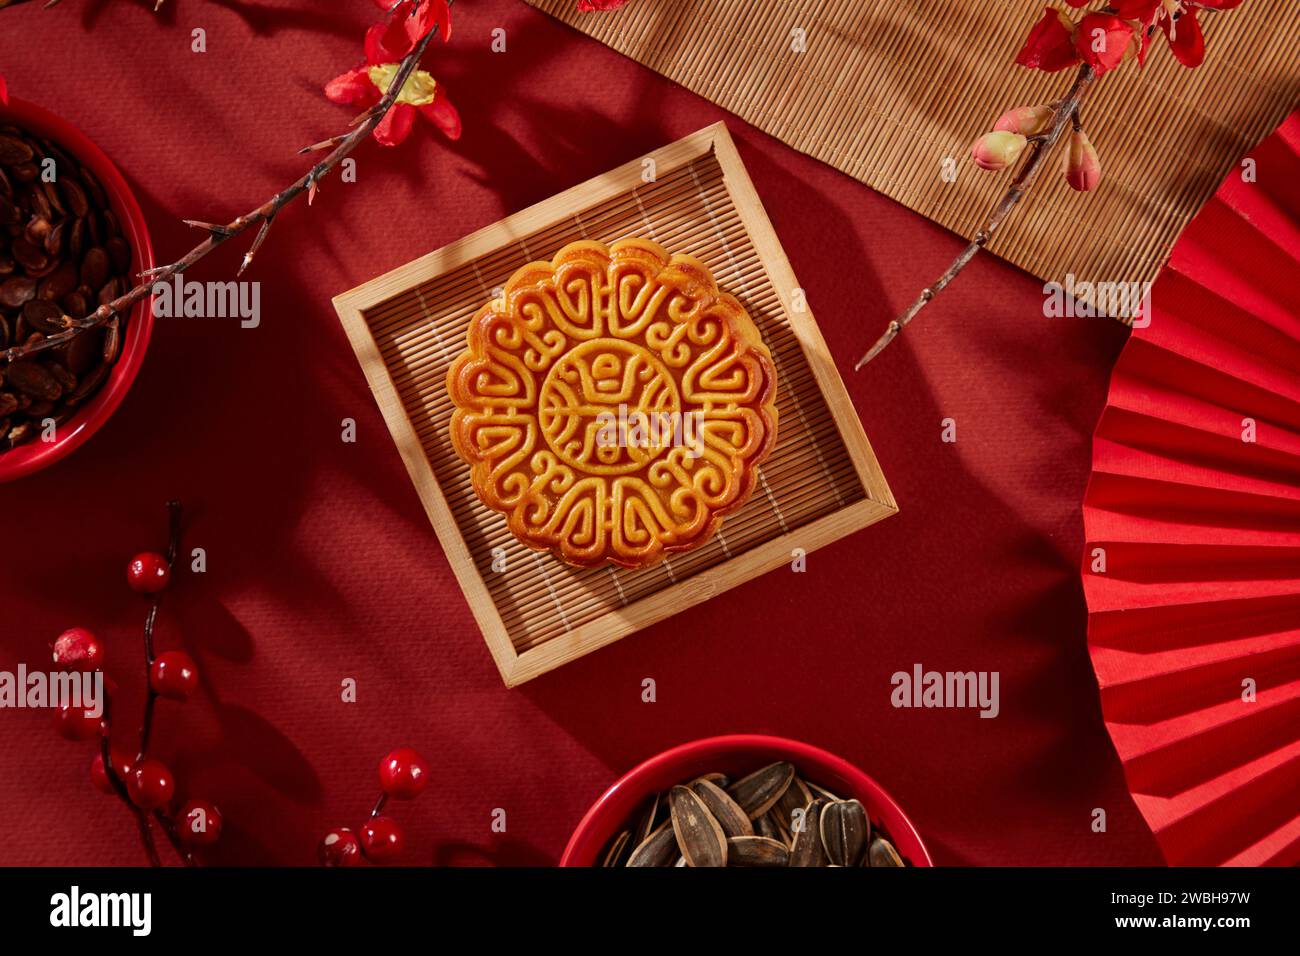 Vassoio di legno a forma quadrata contenente una torta lunare. In mostra ciotole rosse di semi di girasole e semi di melone. La gente di solito guarda la luna piena in Foto Stock